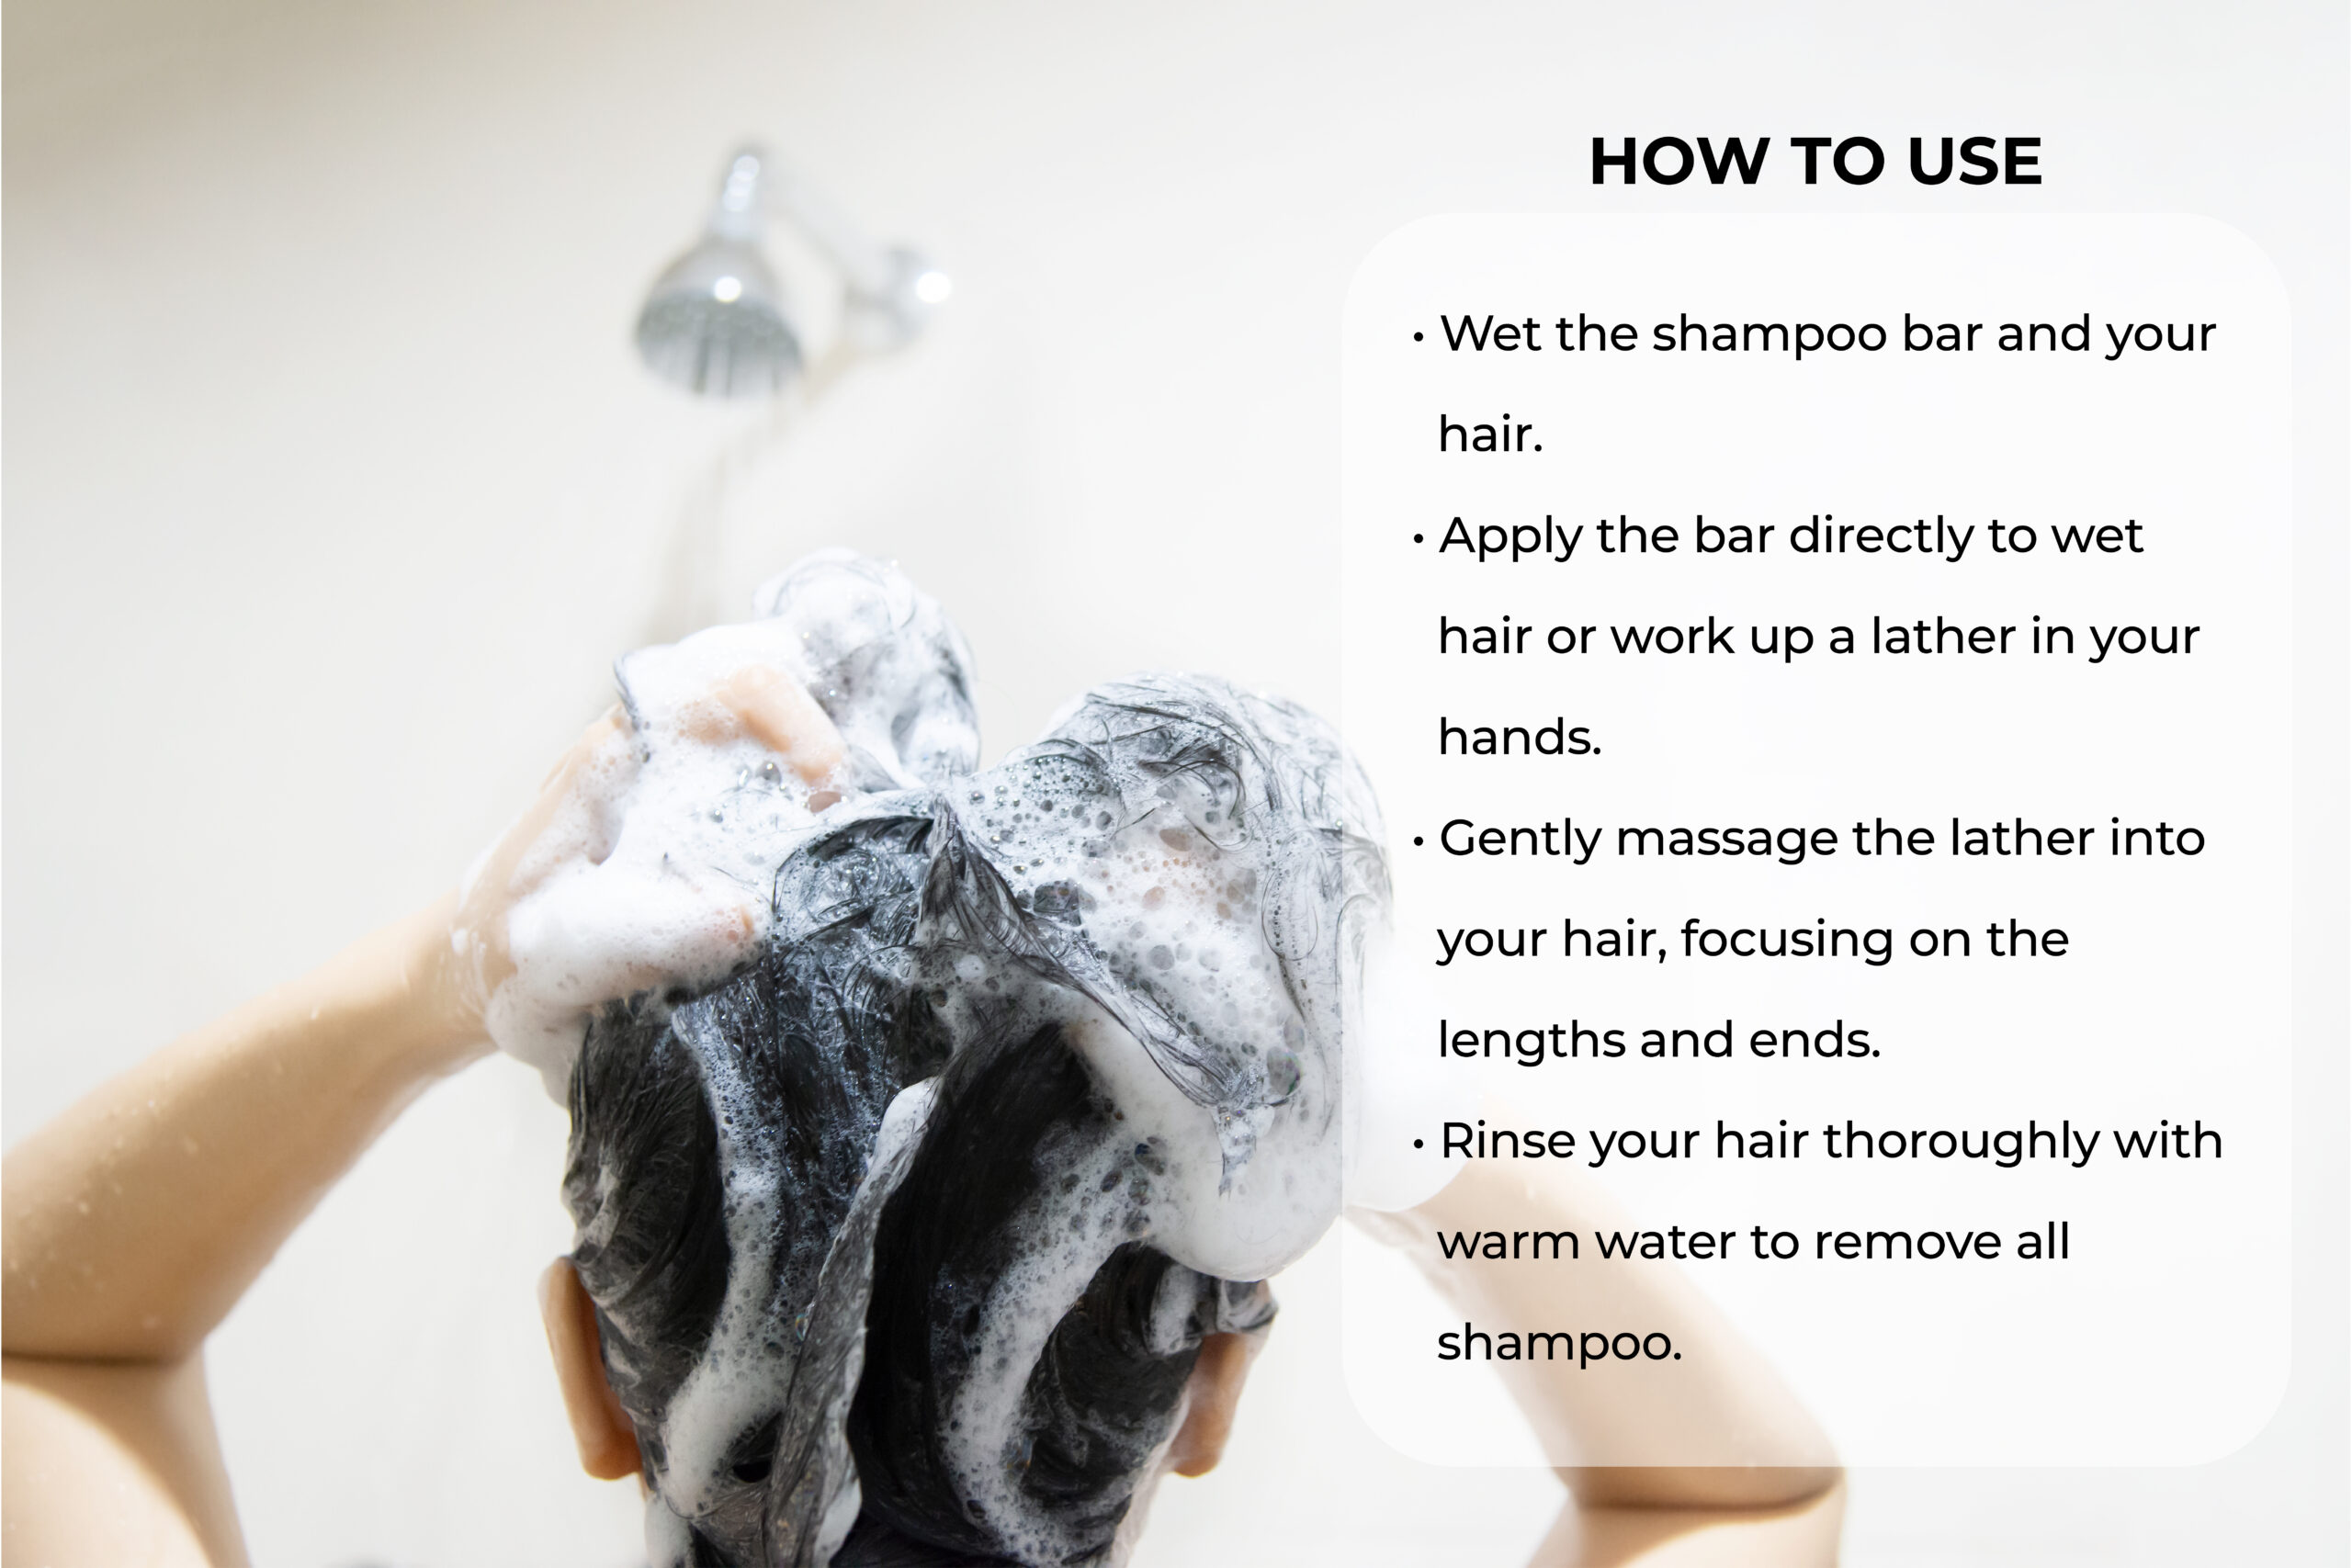 How to Use Shampoo Bar: